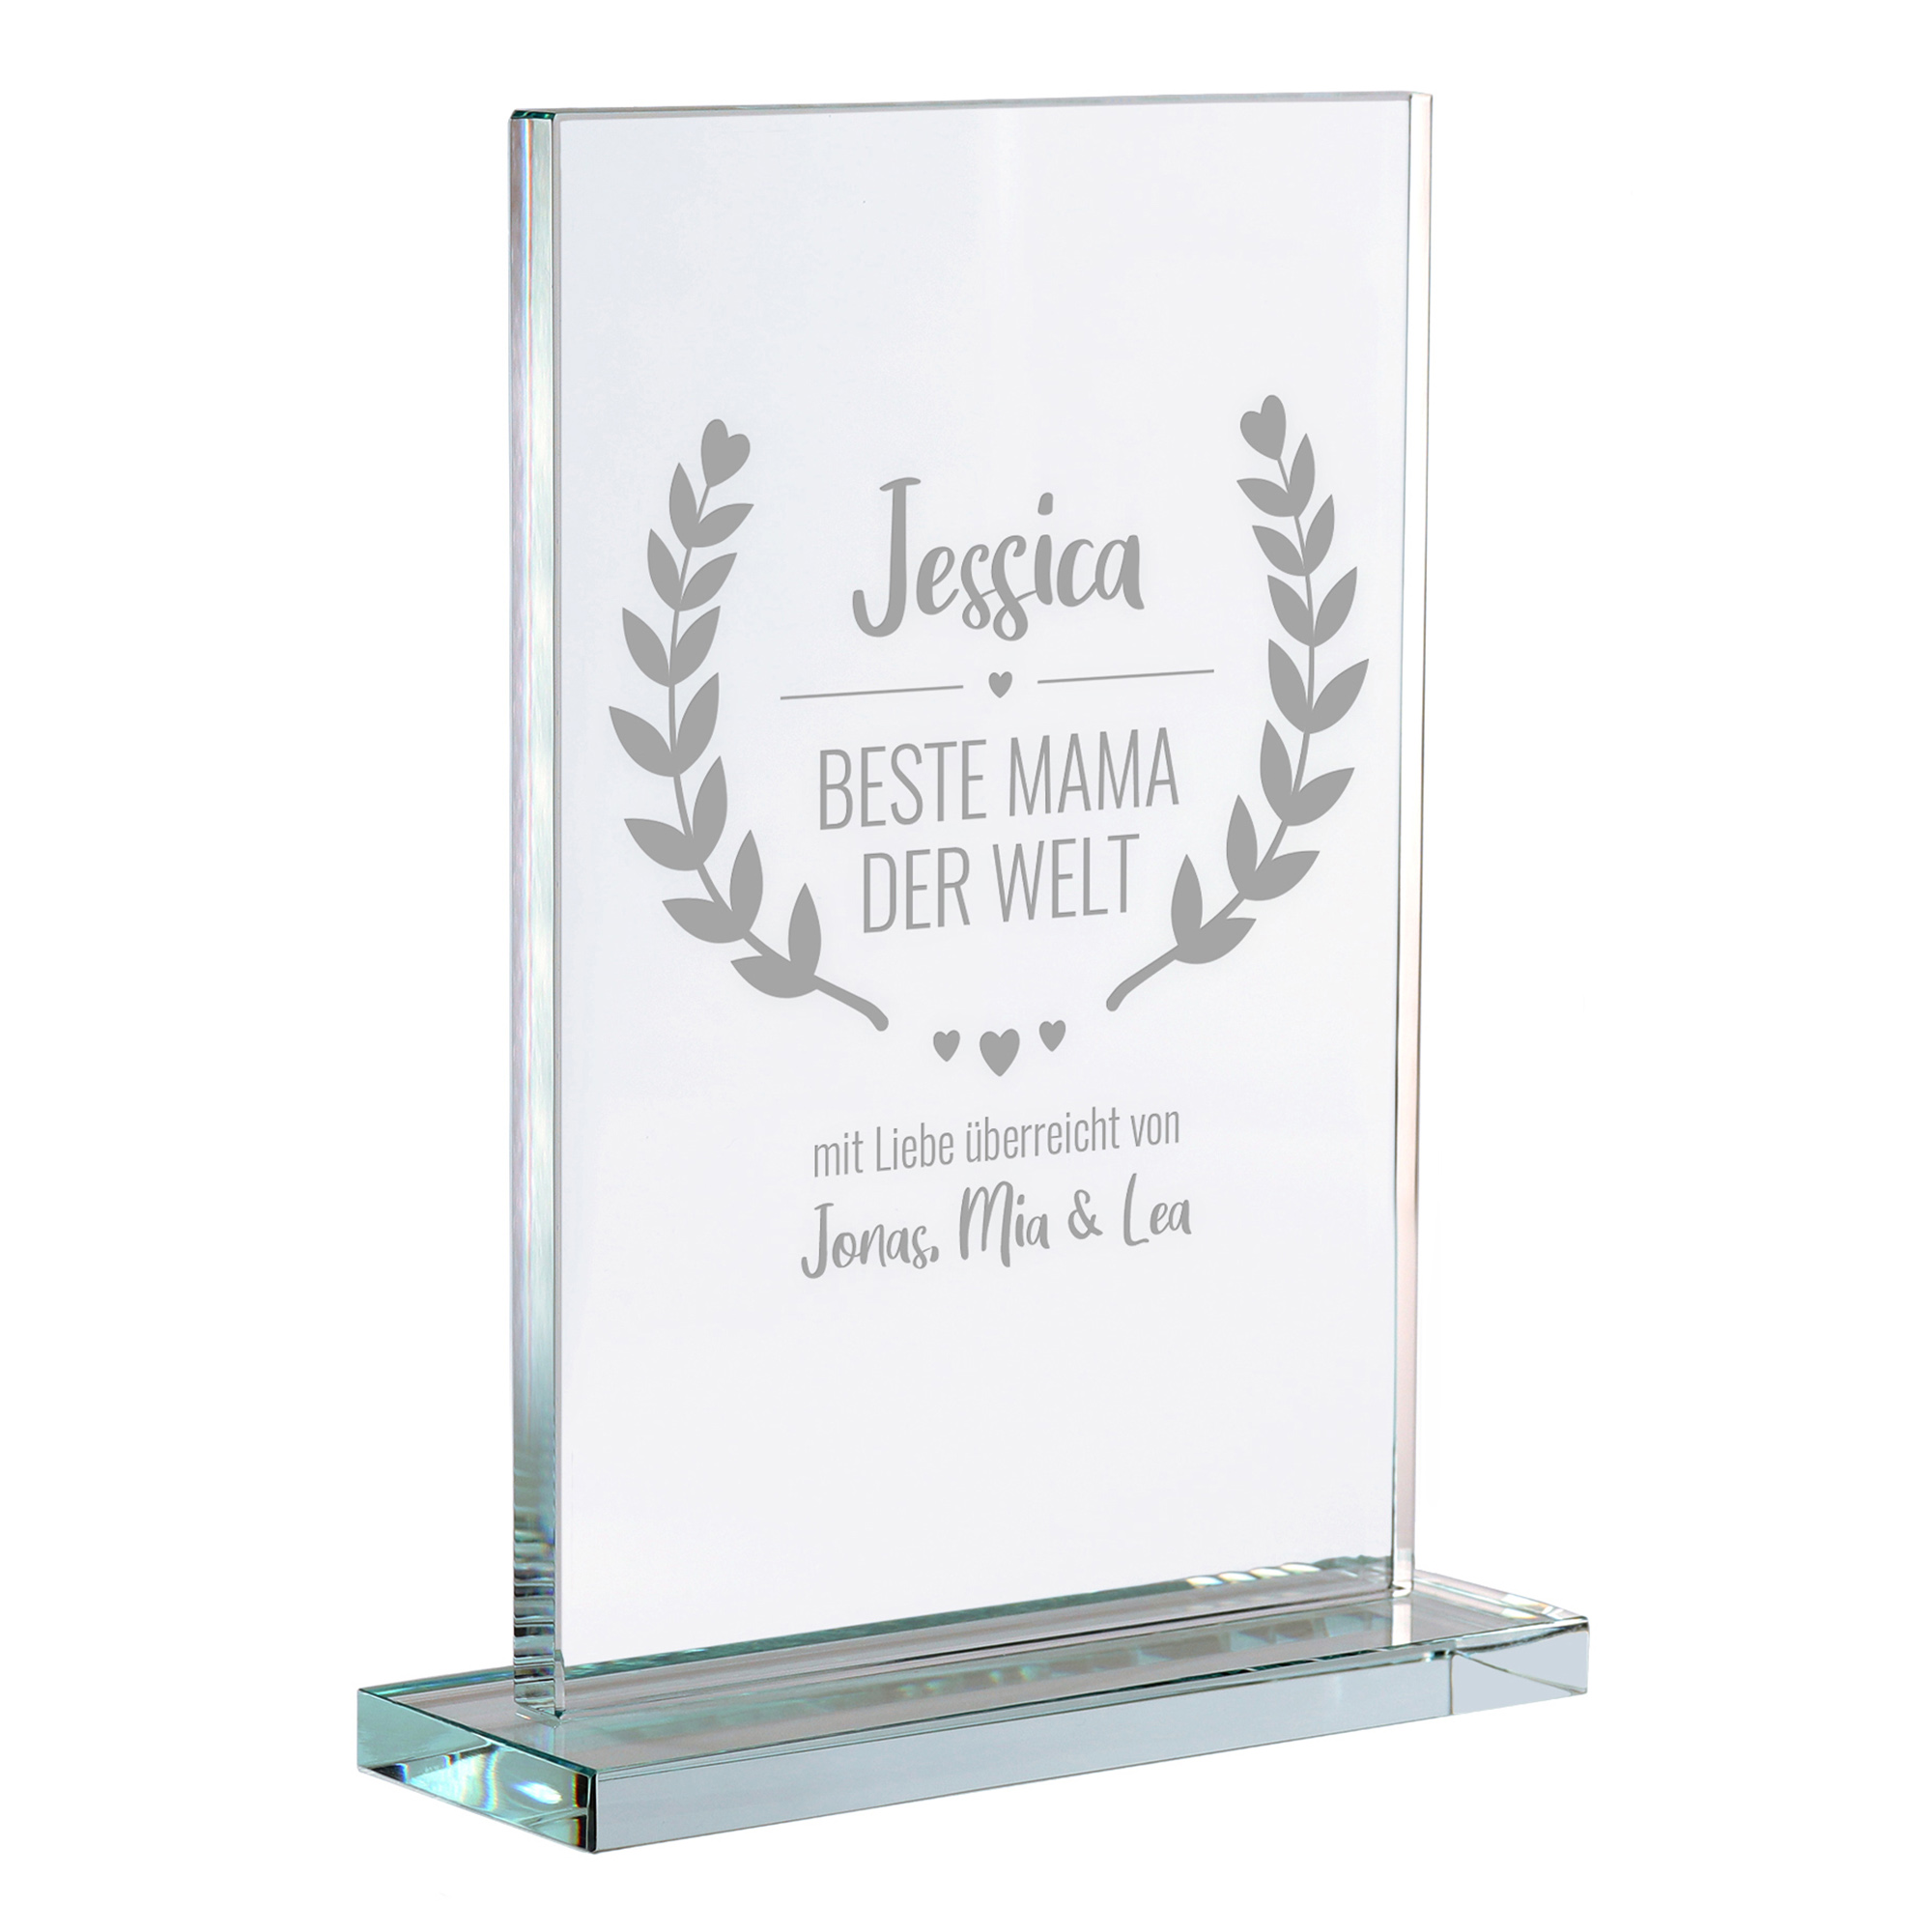 Personalisierter Glaspokal - Auszeichnung für Beste Mama 2162-167-MZ - 2